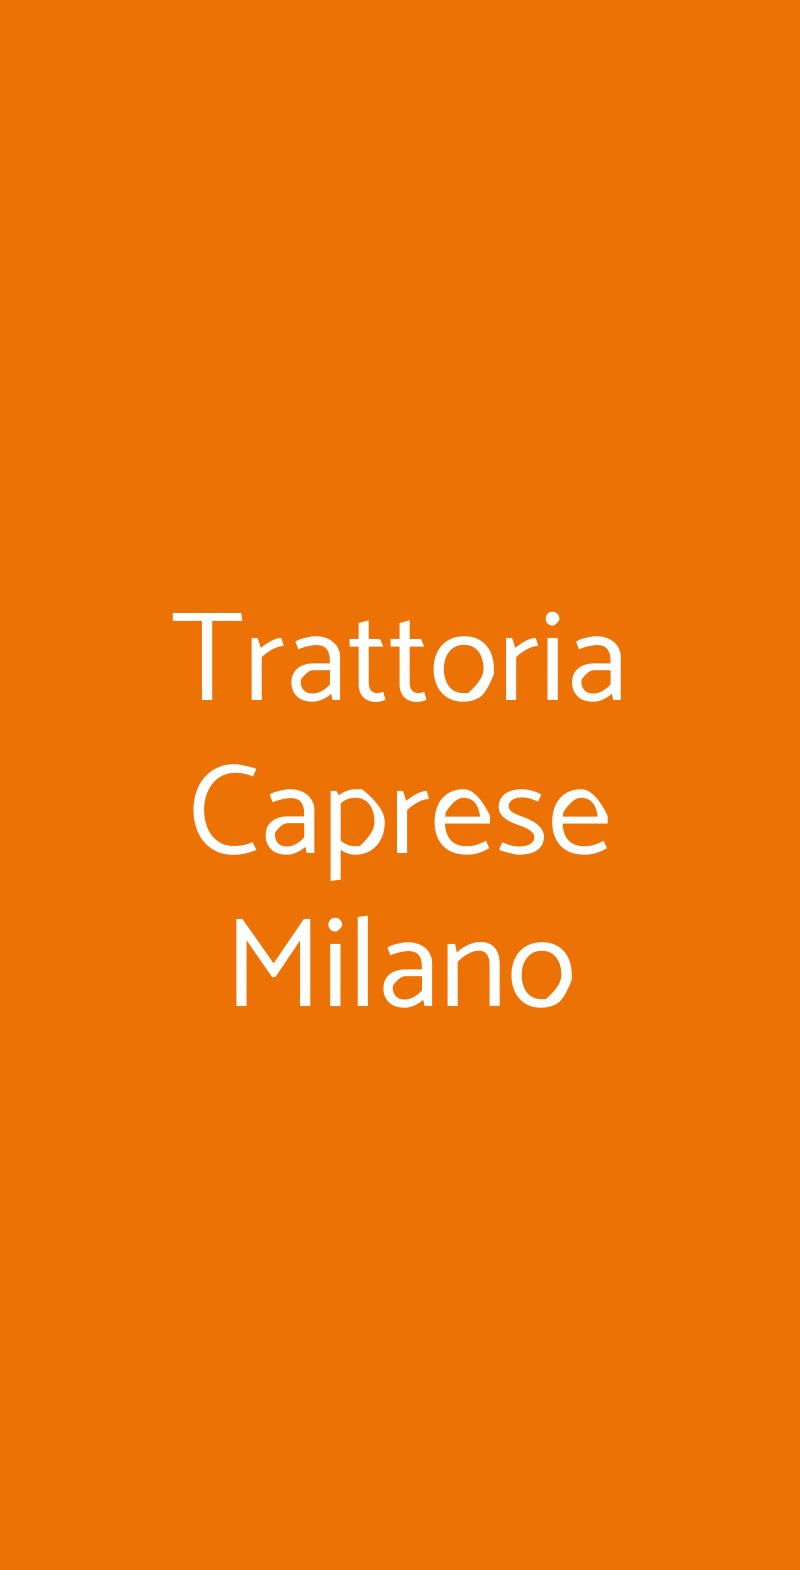 Trattoria Caprese Milano Milano menù 1 pagina